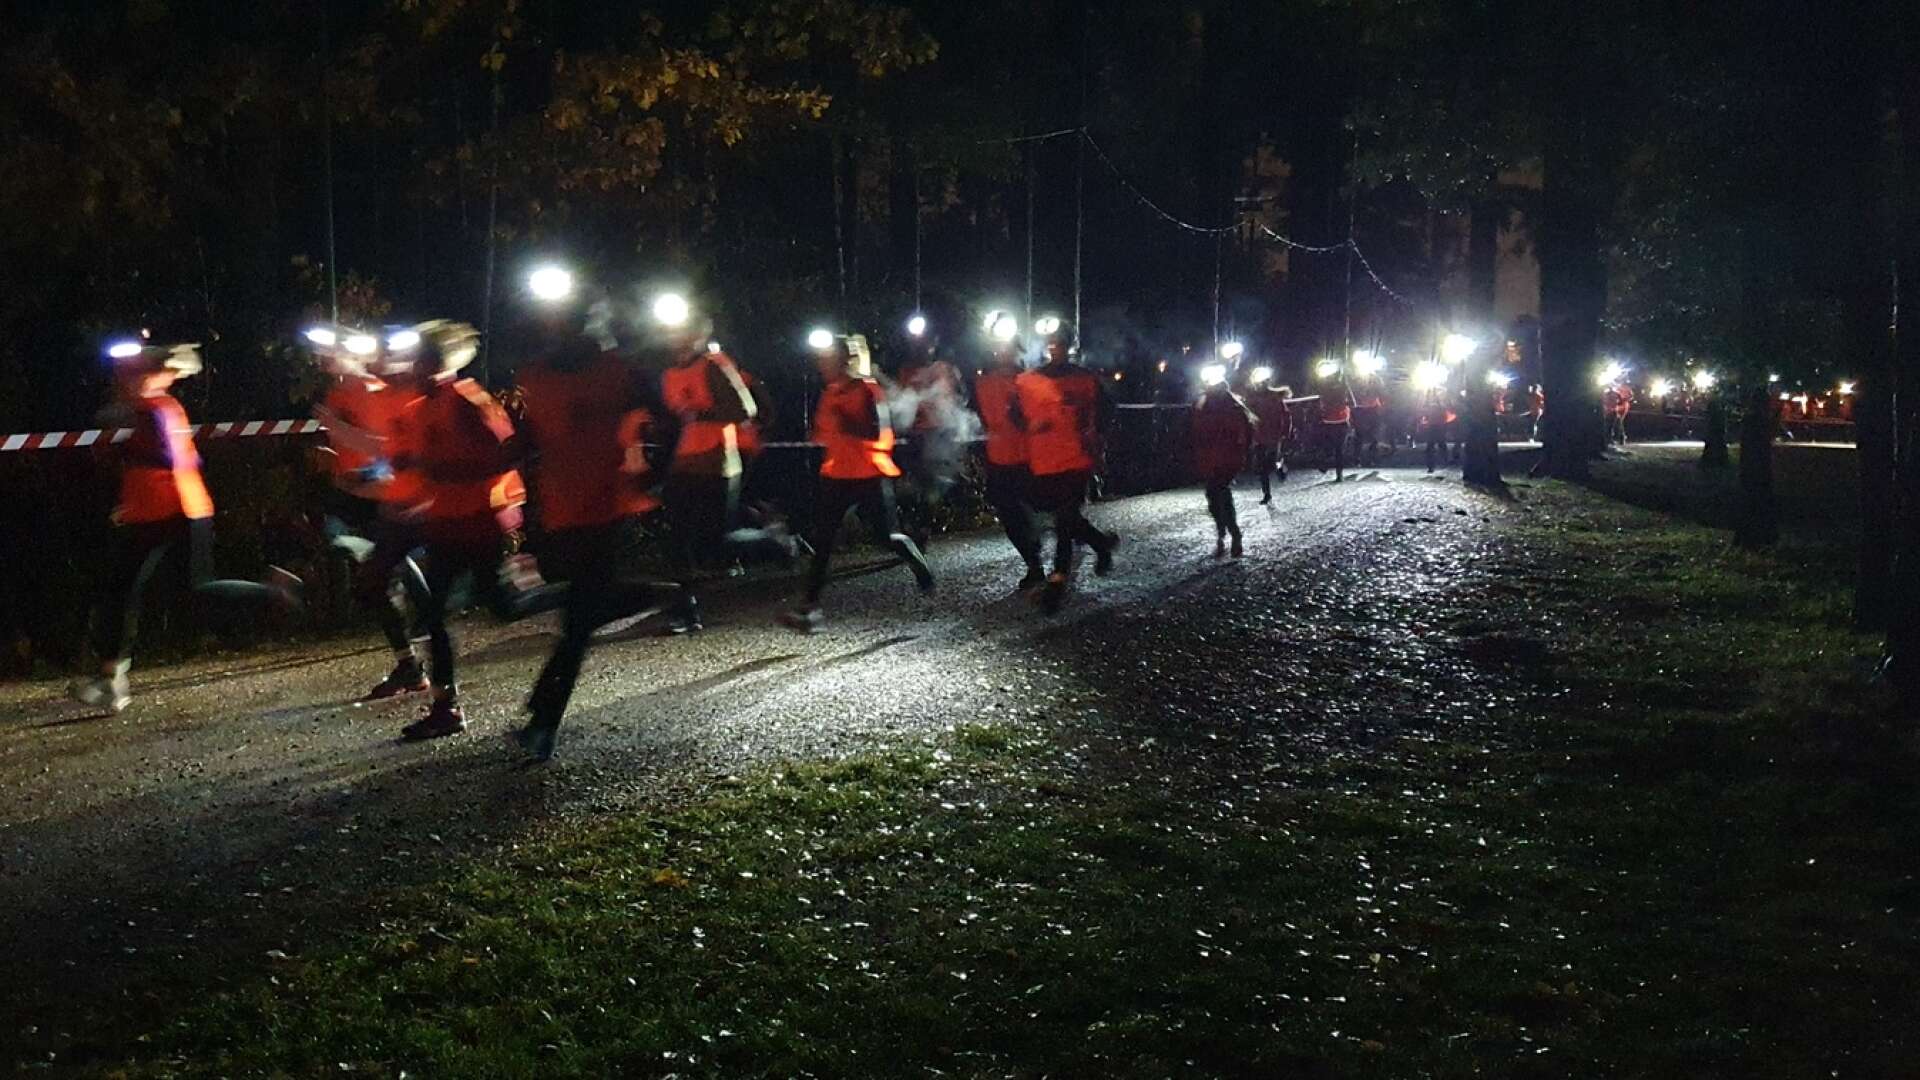 Massor av pannlampor lyste upp mörkret när årets upplaga av Energiruset i Mariebergsskogen i Karlstad avgjordes på torsdagskvällen.